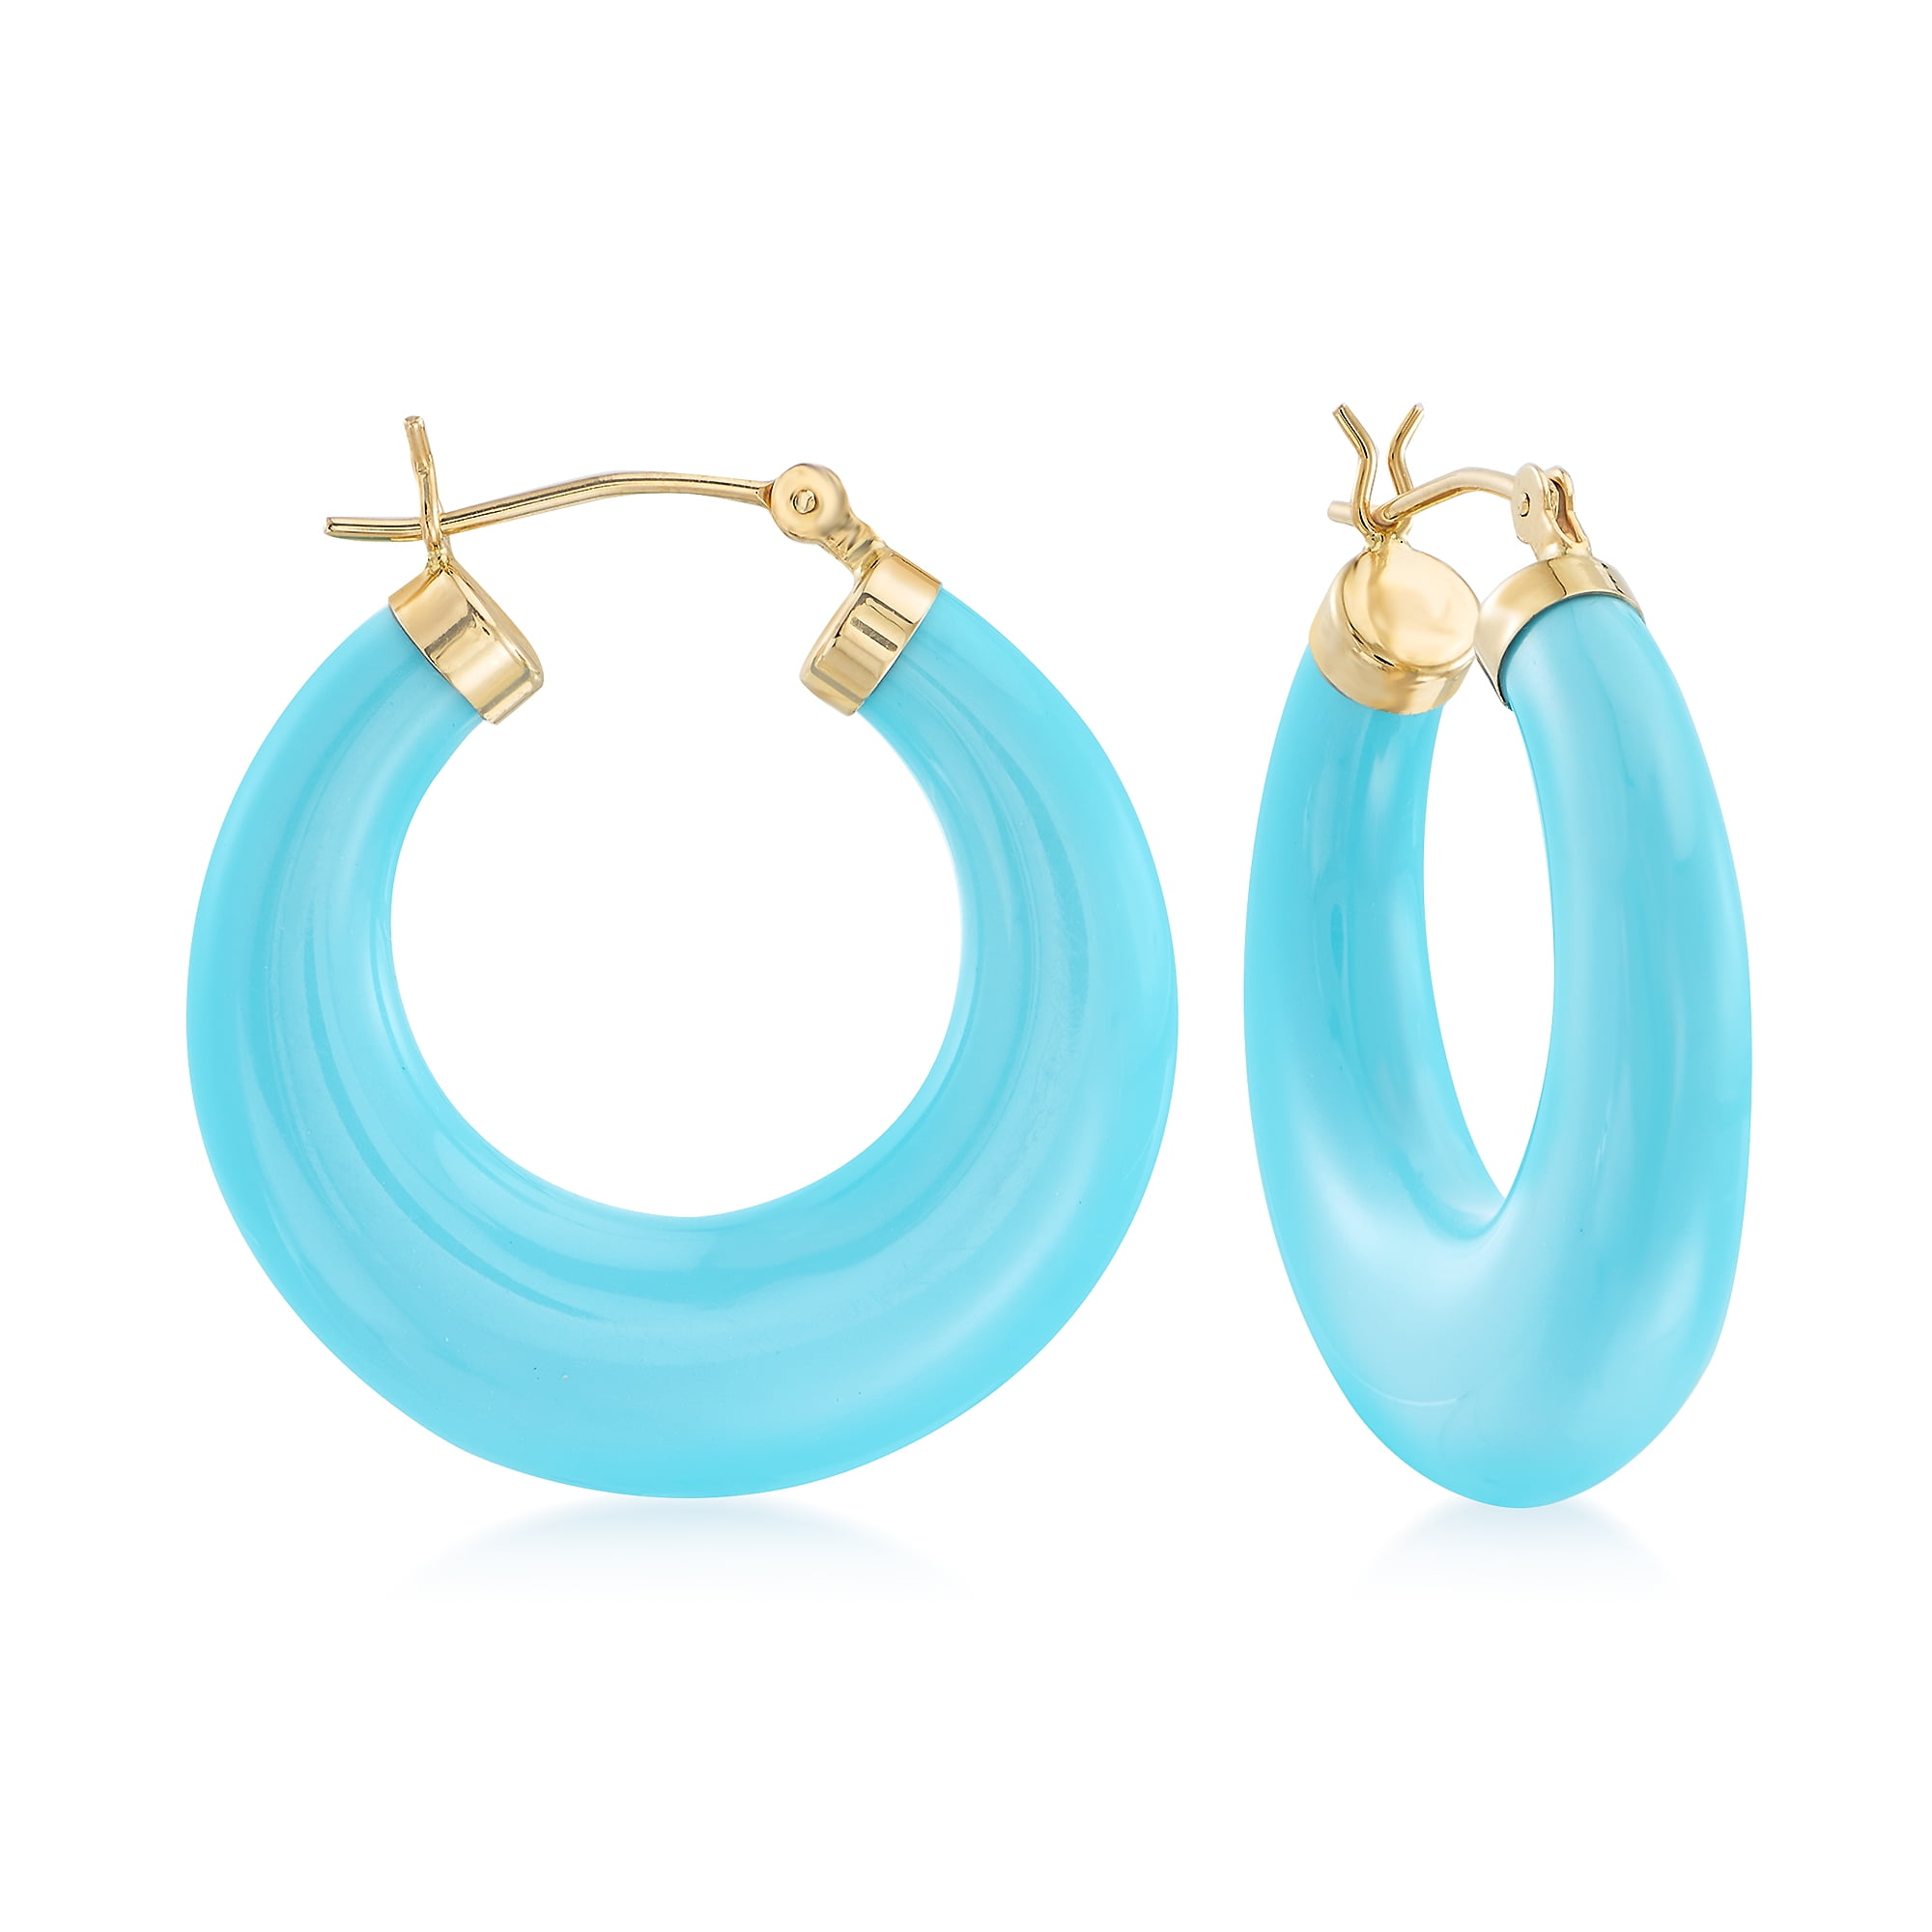 Ross-Simons Turquoise Hoop Earrings in 14kt Yellow Gold For Women ...